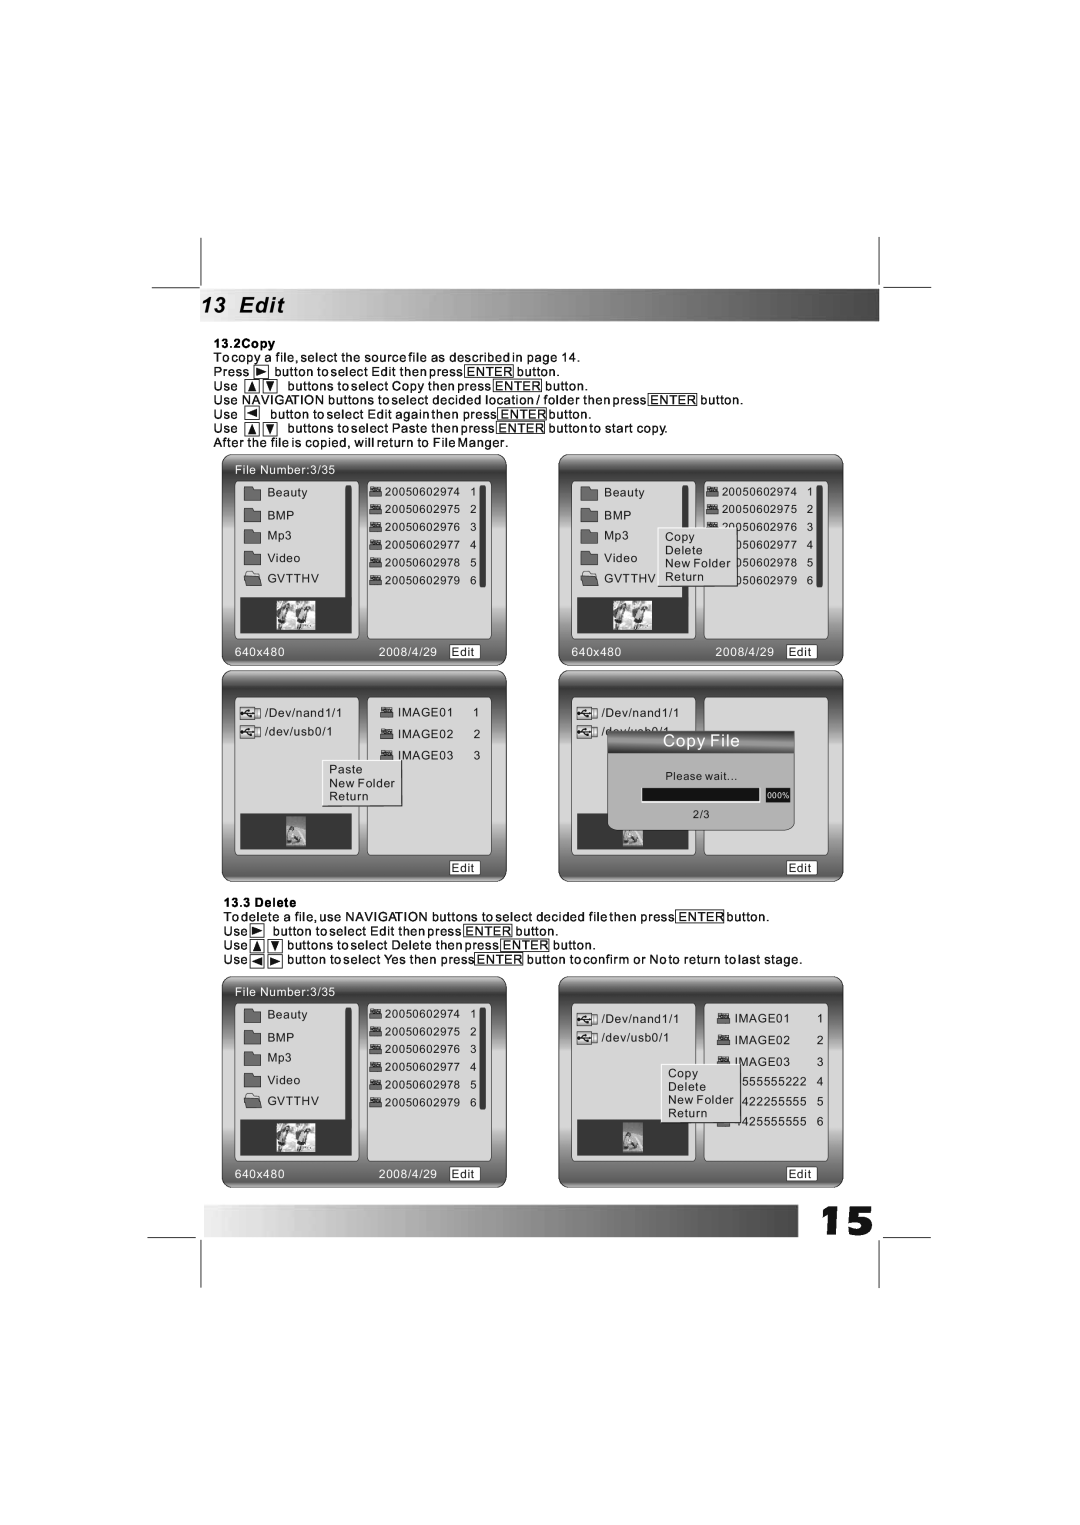 Bush DPF801/DPF1001 manual Copy File, File Number3/35, 640x480, 2008/4/29 Edit, Delete 